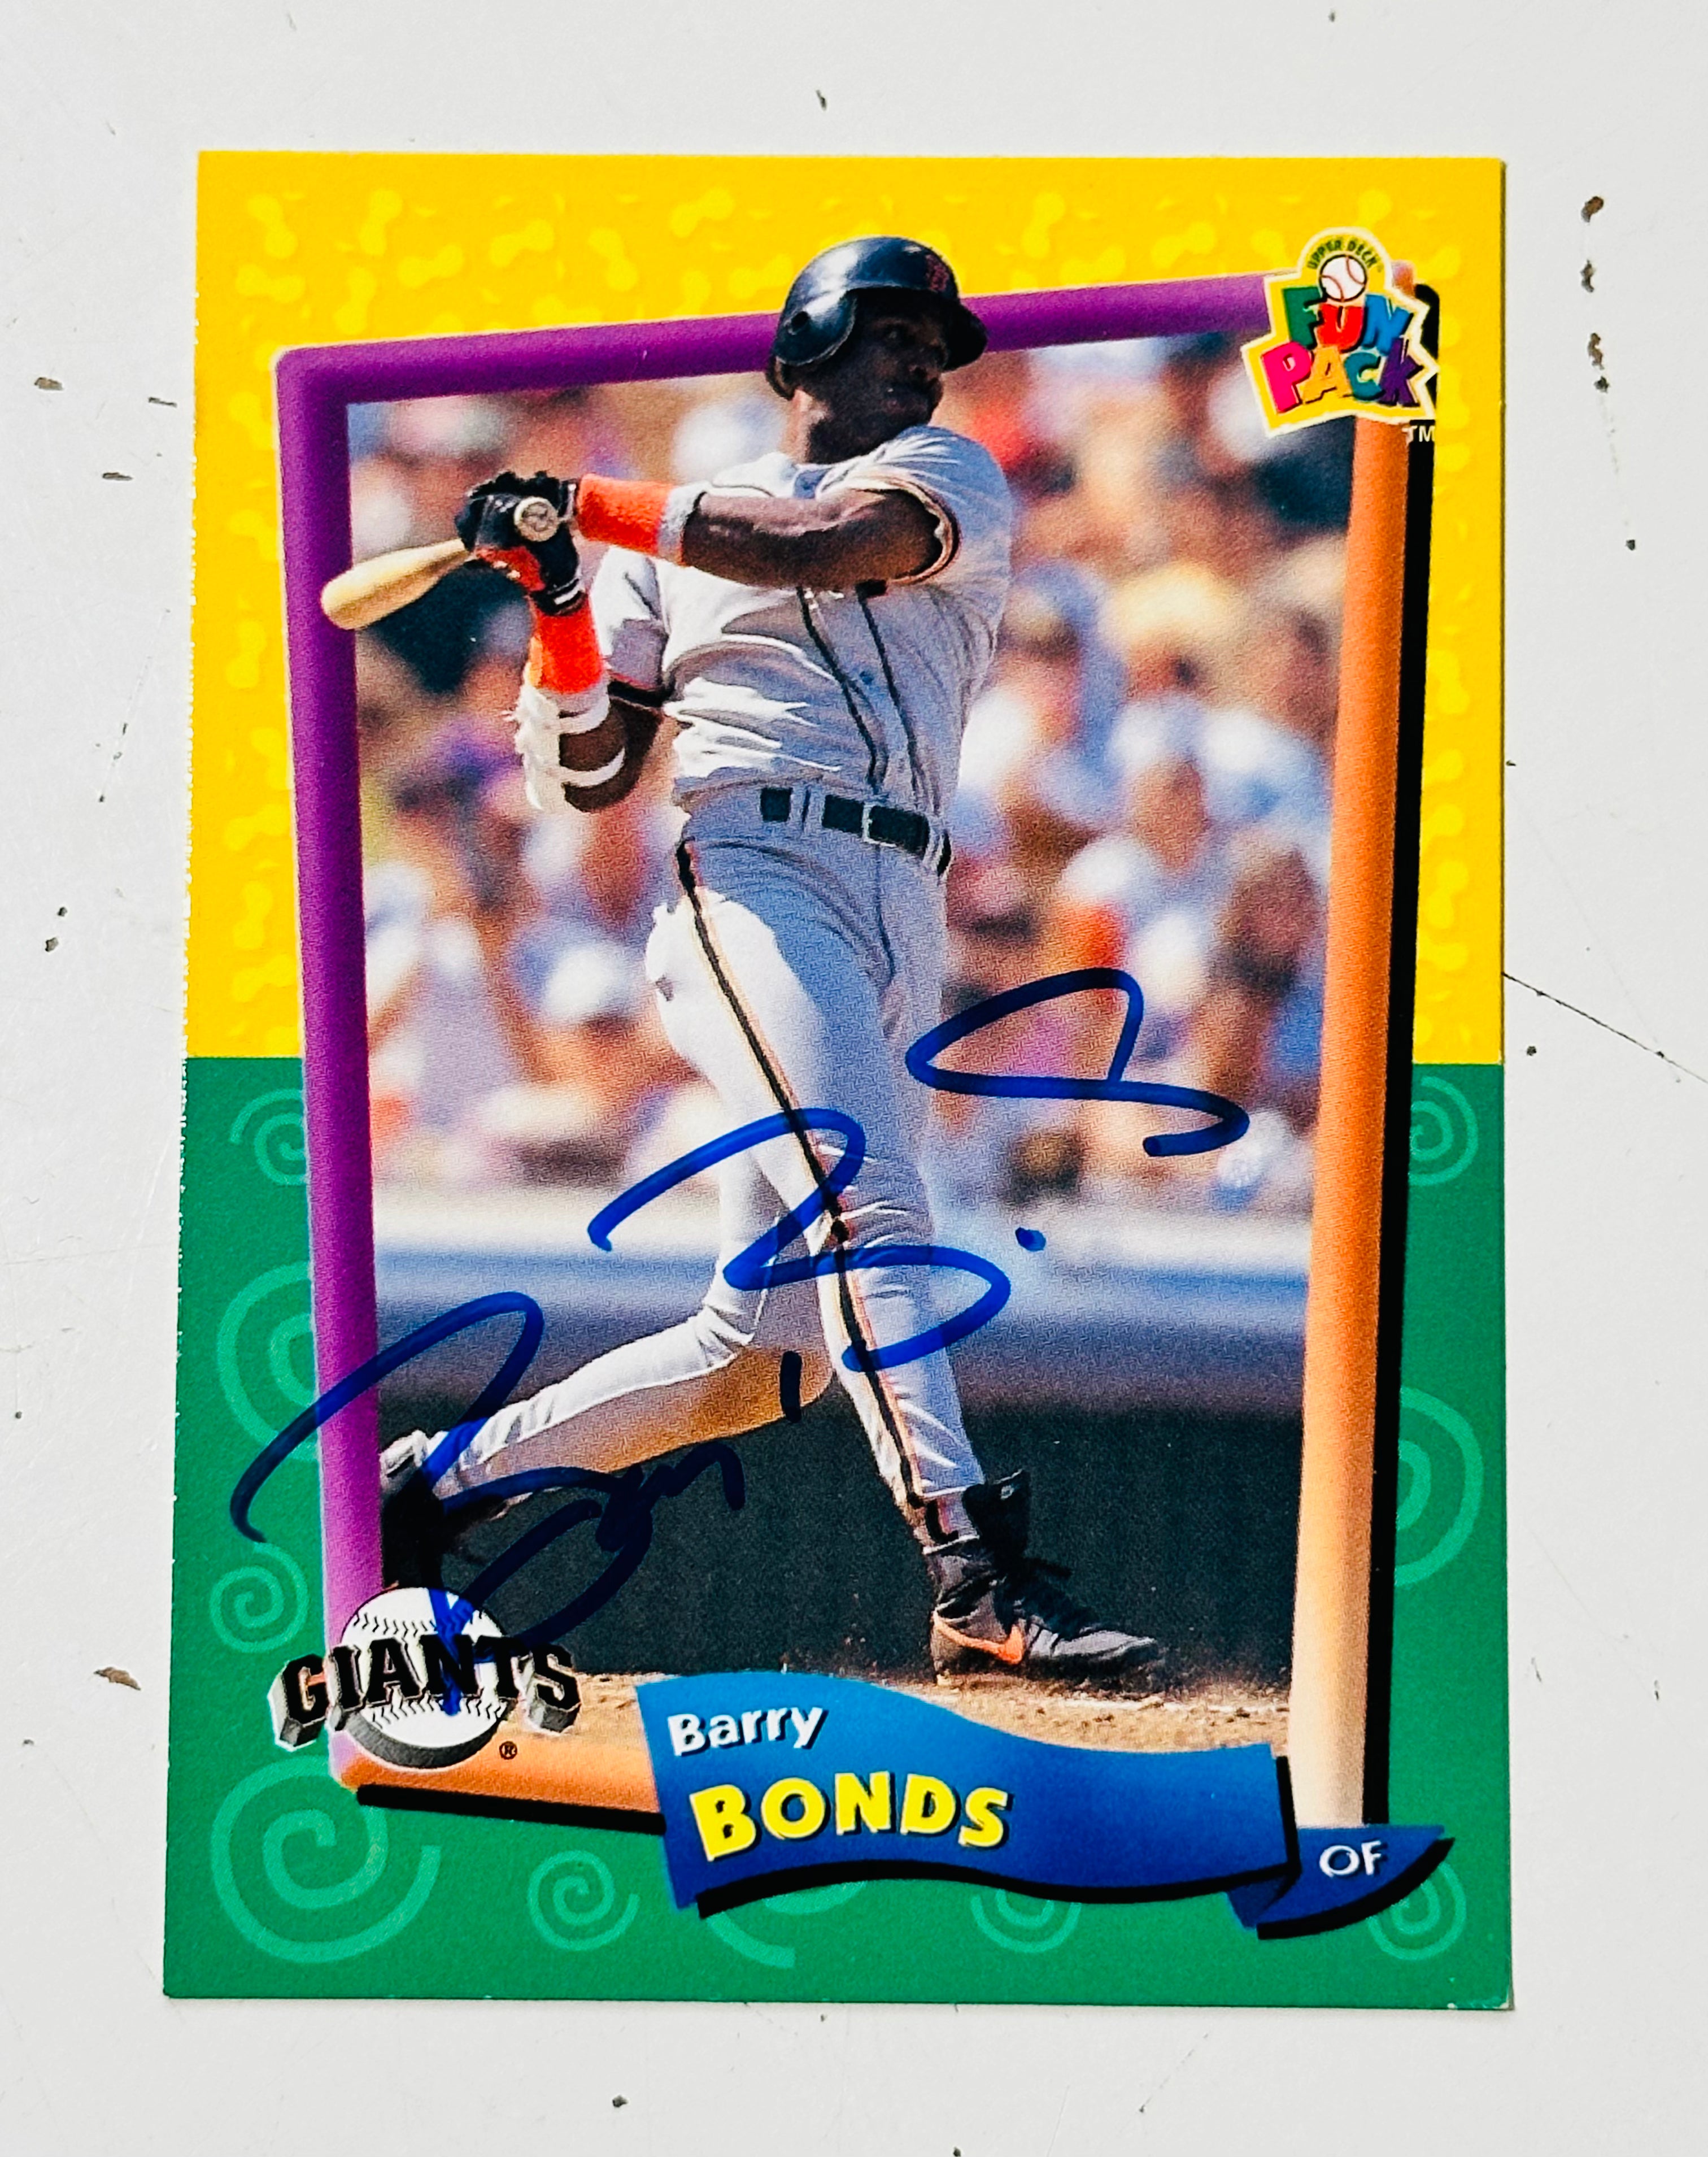 Barry Bonds rare original signed baseball card with COA